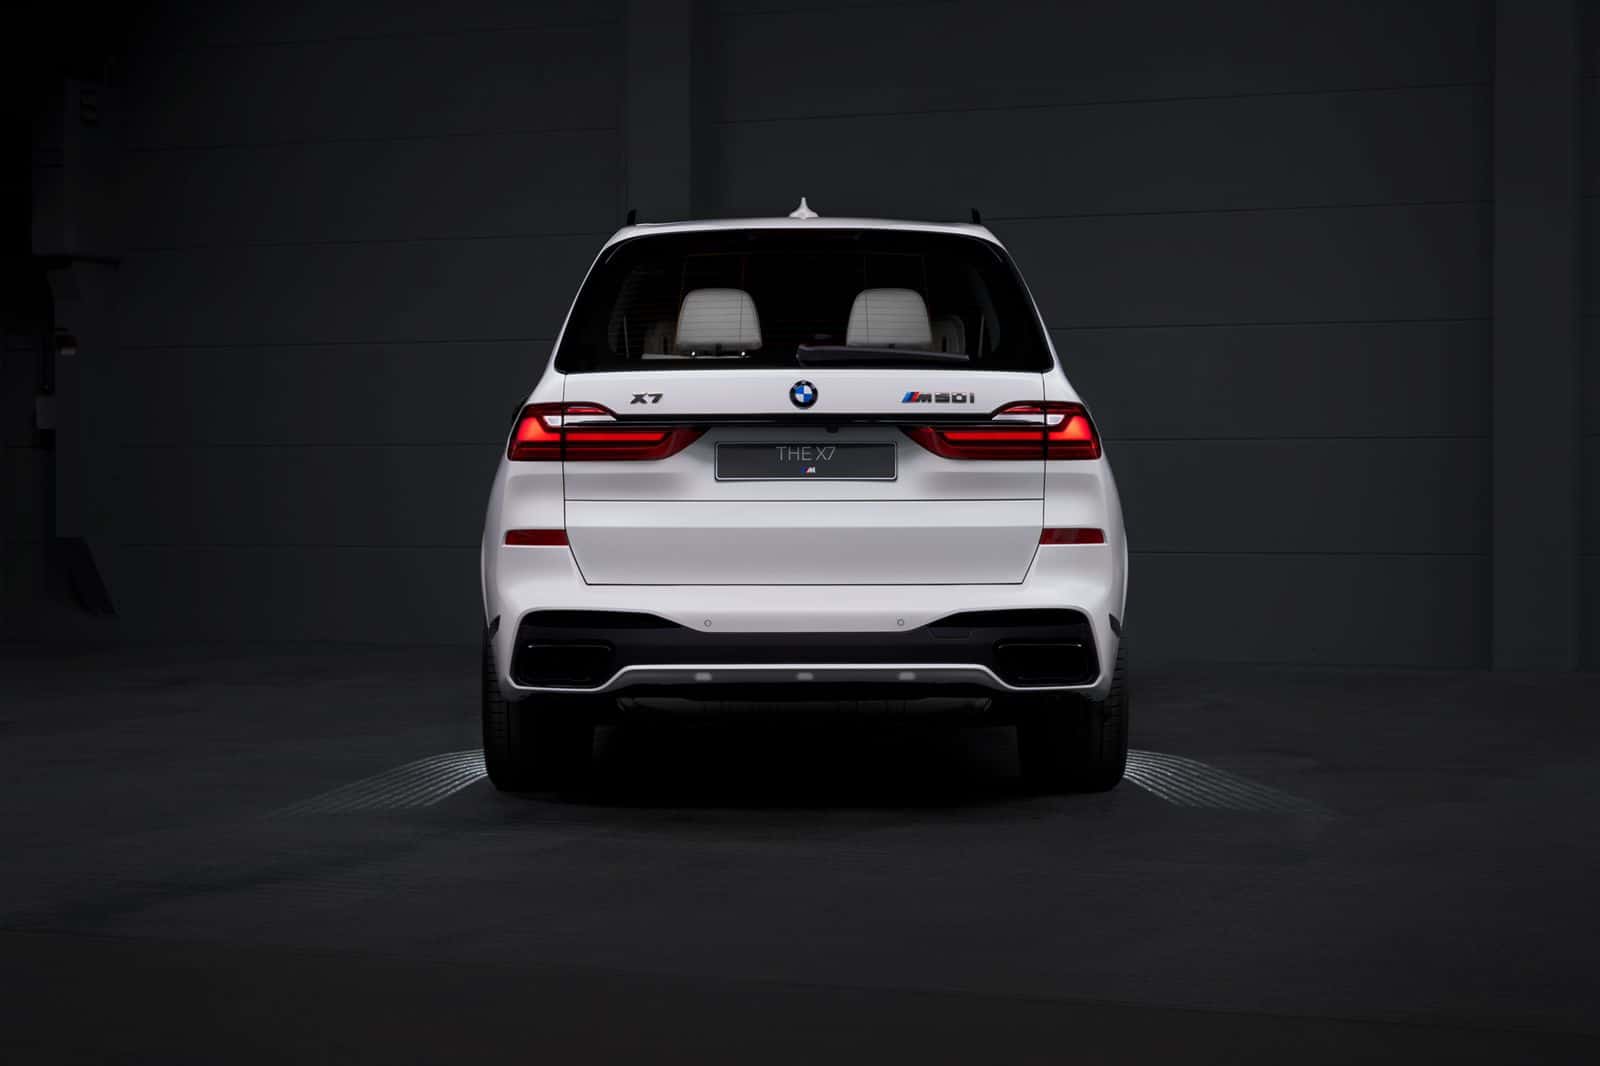 BMW presintearret de X7, it fyftichste jubileum fan 'e oprjochting fan 'e Feriene Arabyske Emiraten, by gelegenheid fan 'e fiering fan it gouden jubileum yn it lân